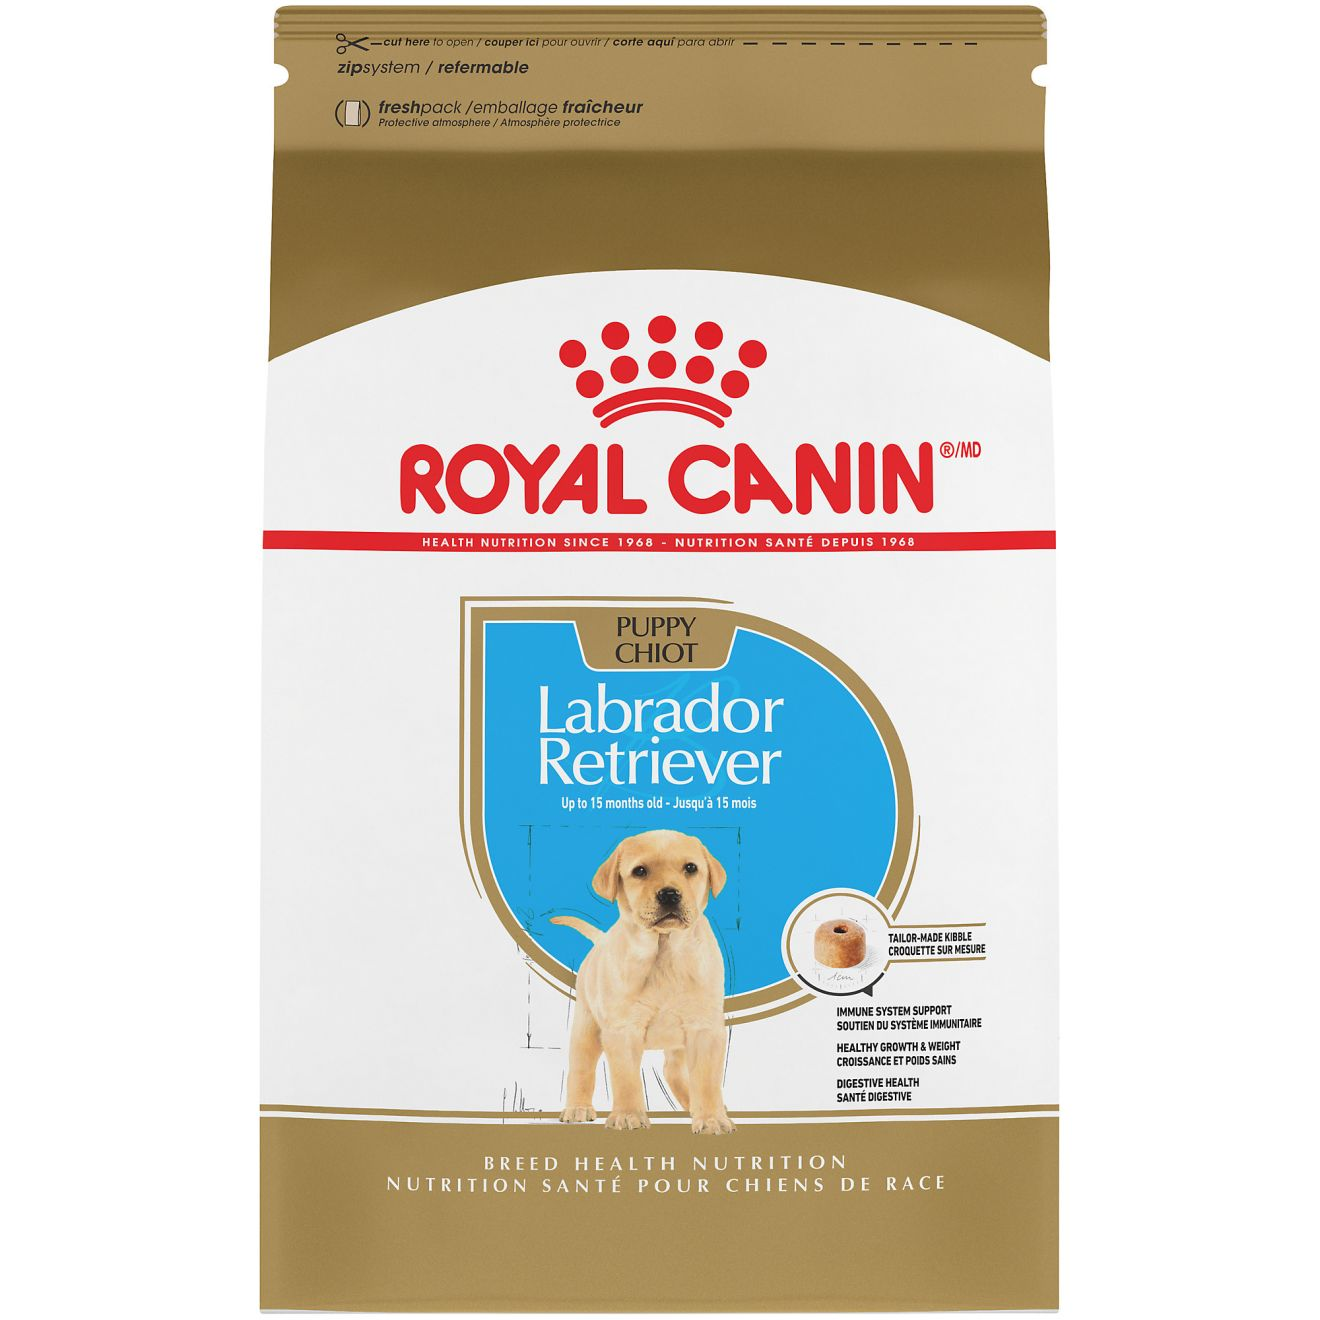 Labrador Retriever Puppy Dry Dog Food